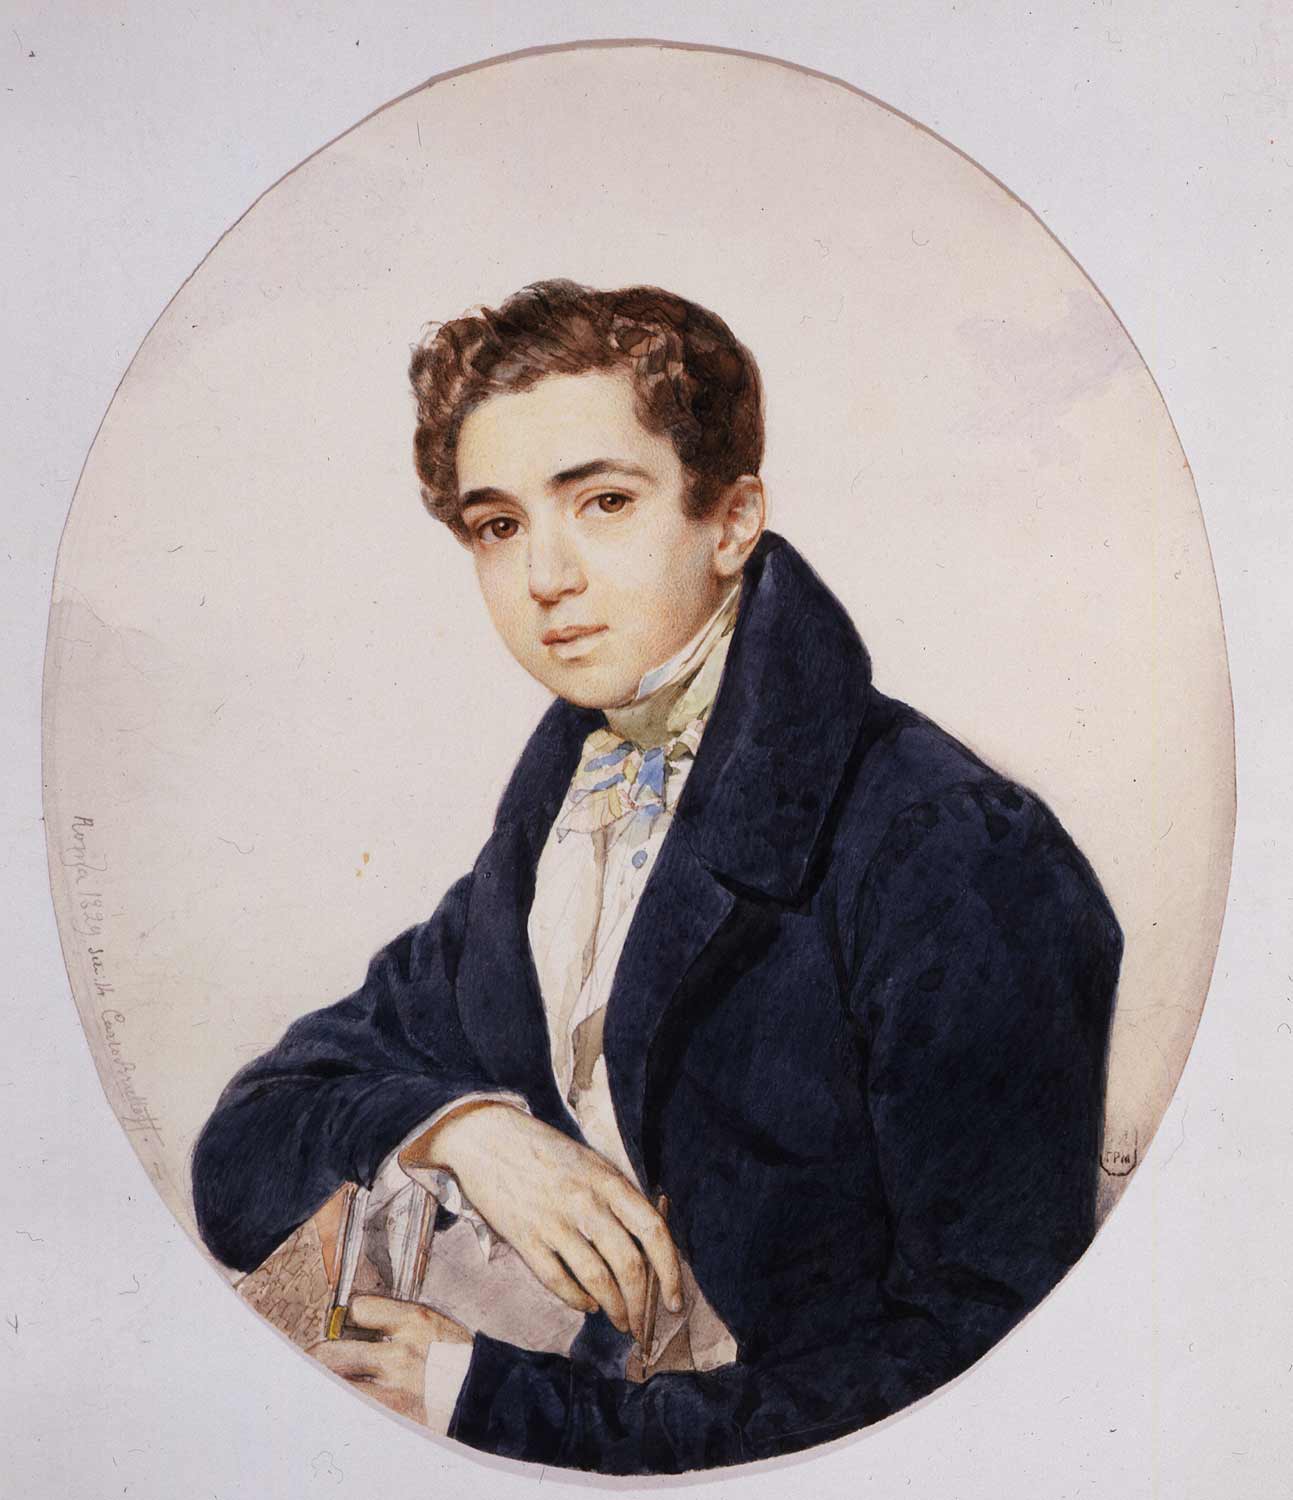 Брюллов К.П. Портрет князя Г. Г. Гагарина. 1829